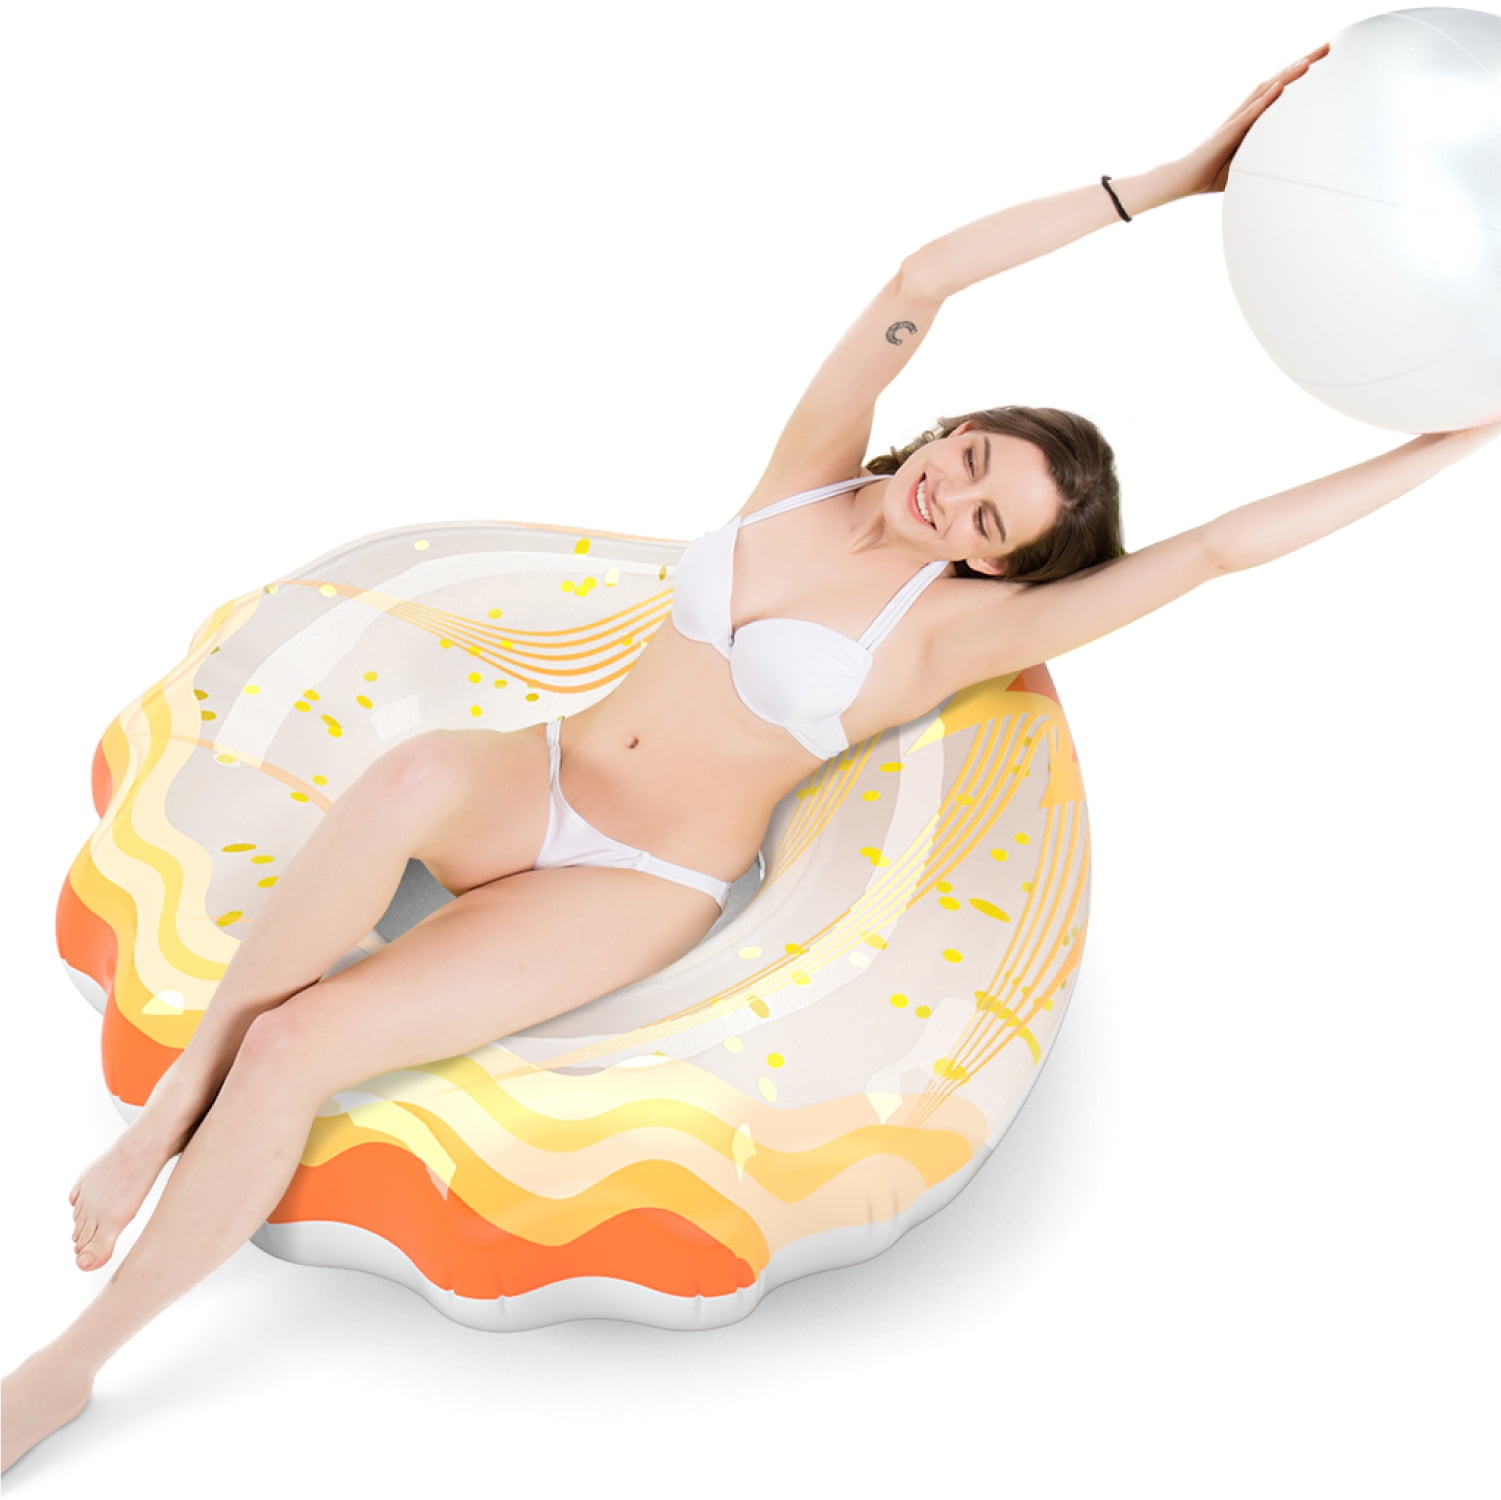 Jasonwell Inflatable Seashell Pool Float Seasehll Floatie with Ball Water Fun La 